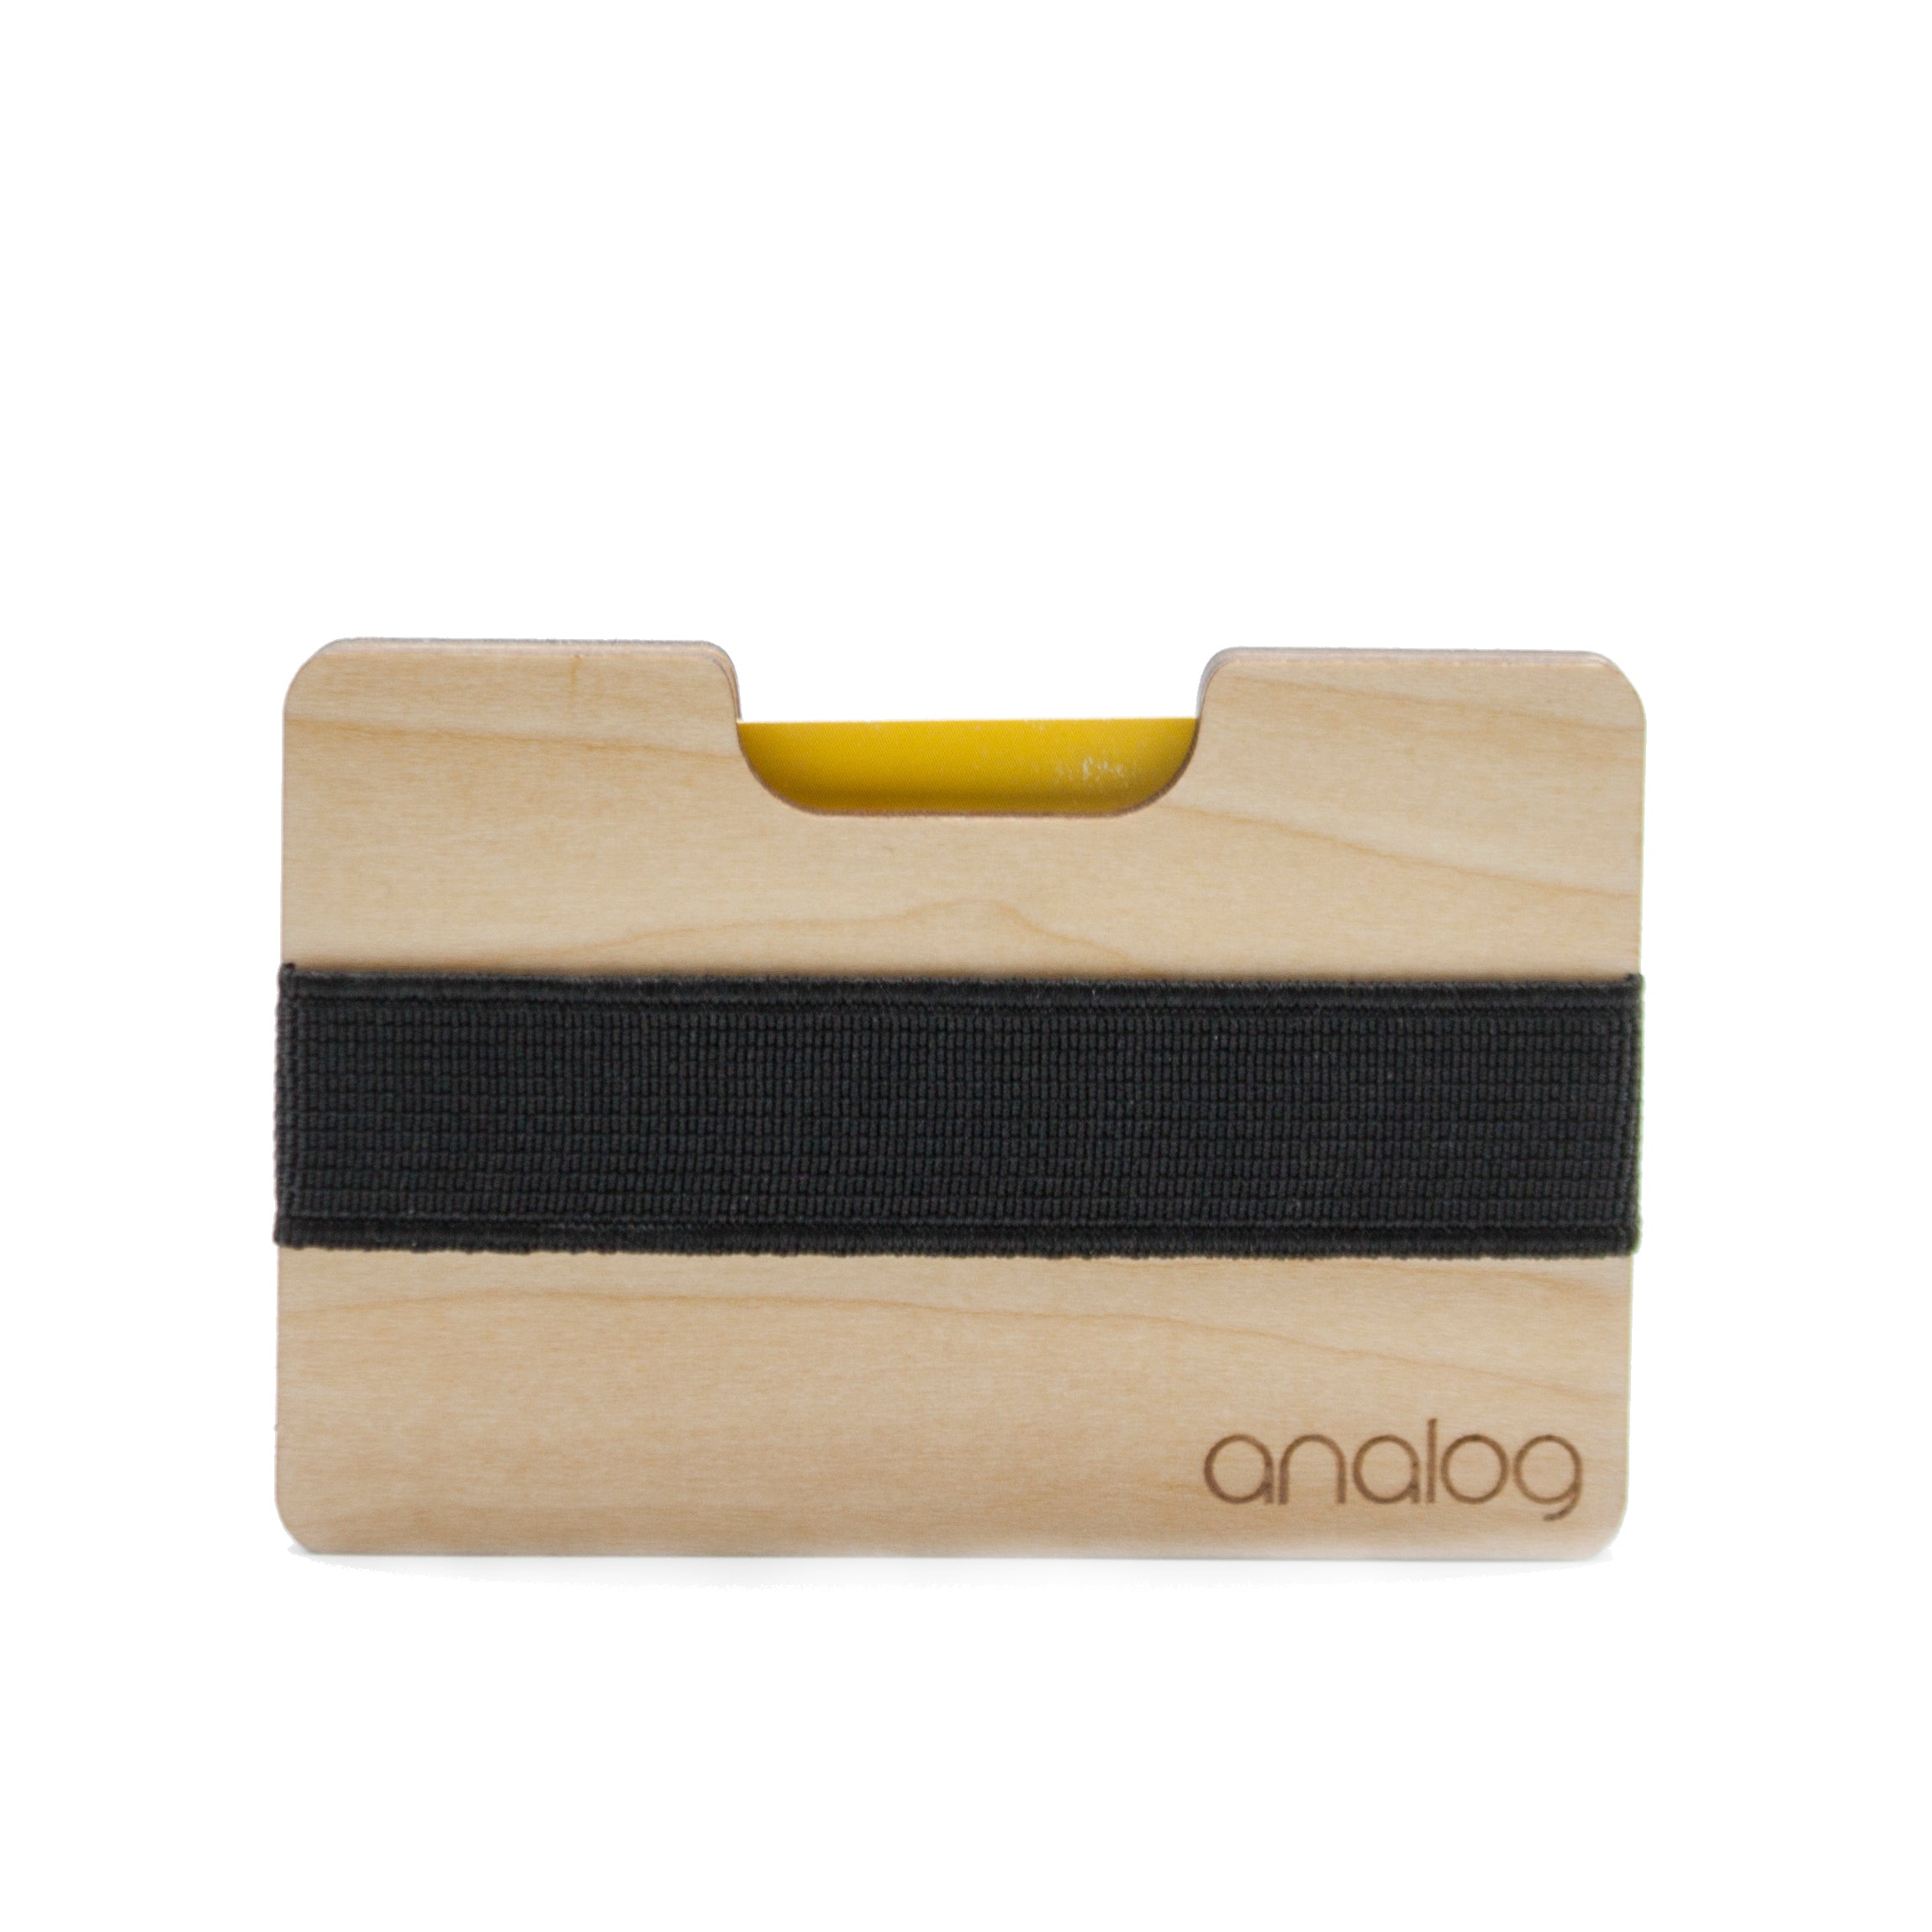 analog watch co. Birch Wallet Card Holder